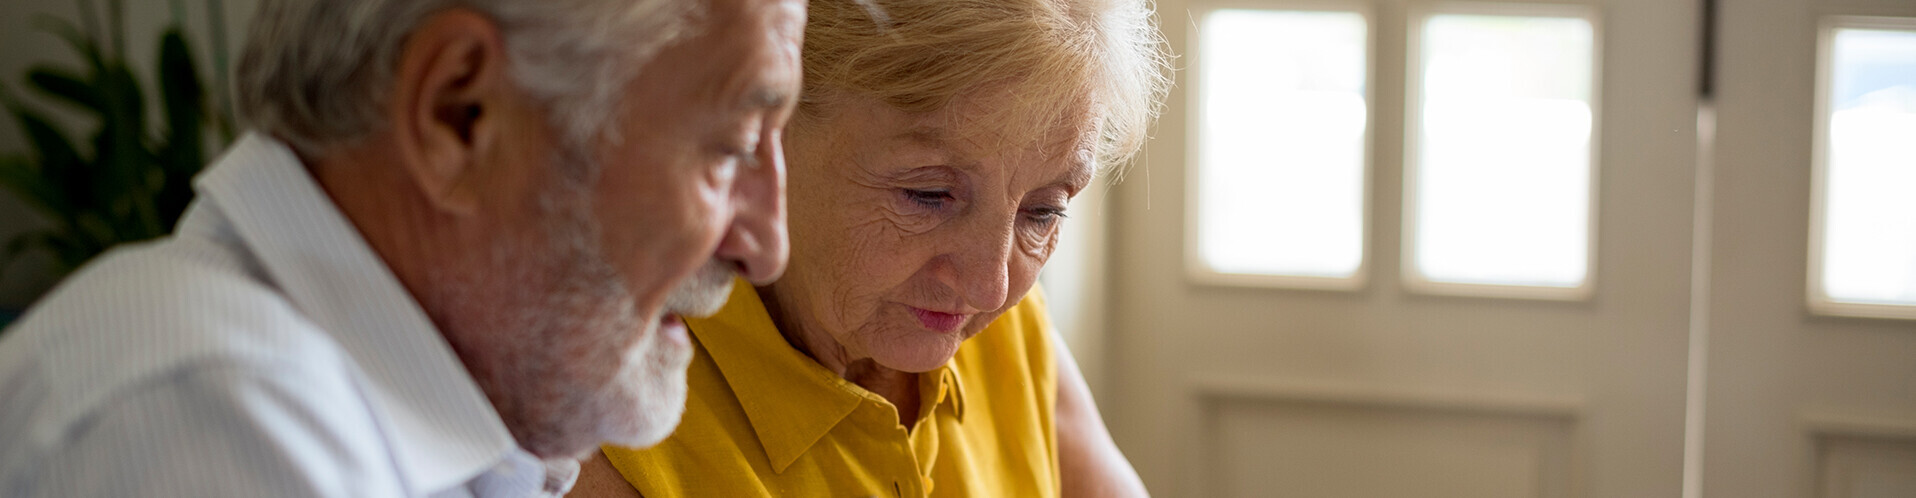 Älteres Paar prüft Vertrag mit einem Taschenrechner